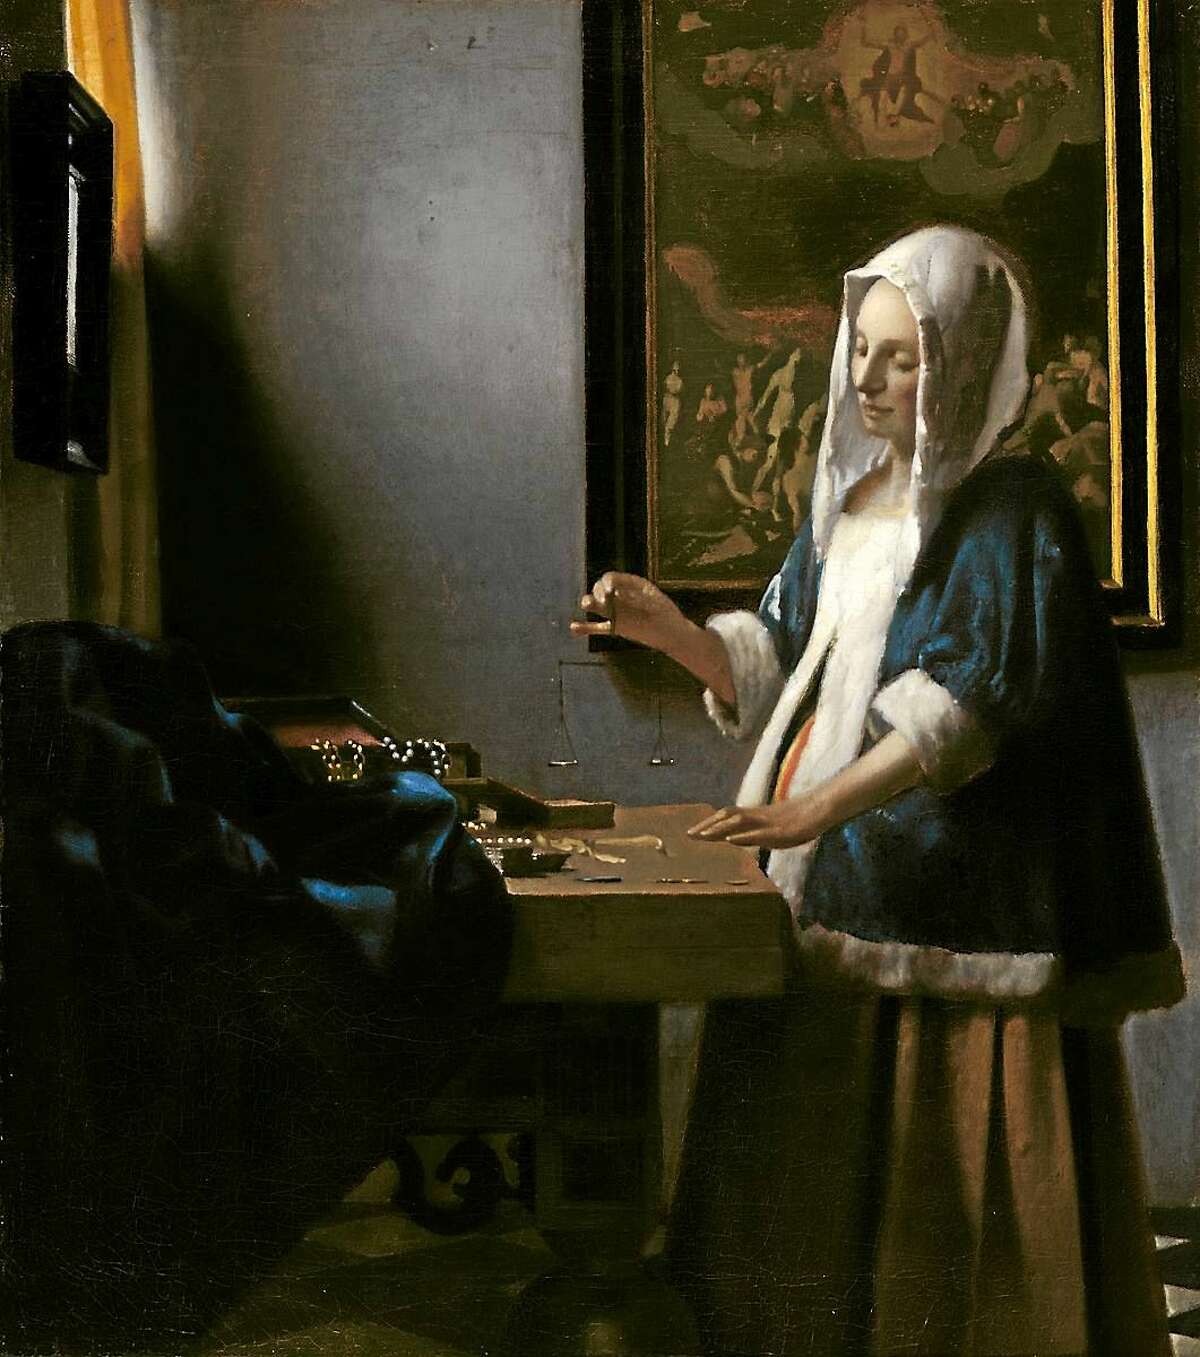 Johannes Vermeer (Dutch, 1632-1675 ), “Woman Holding a Balance,” c. 1664, oil on canvas.